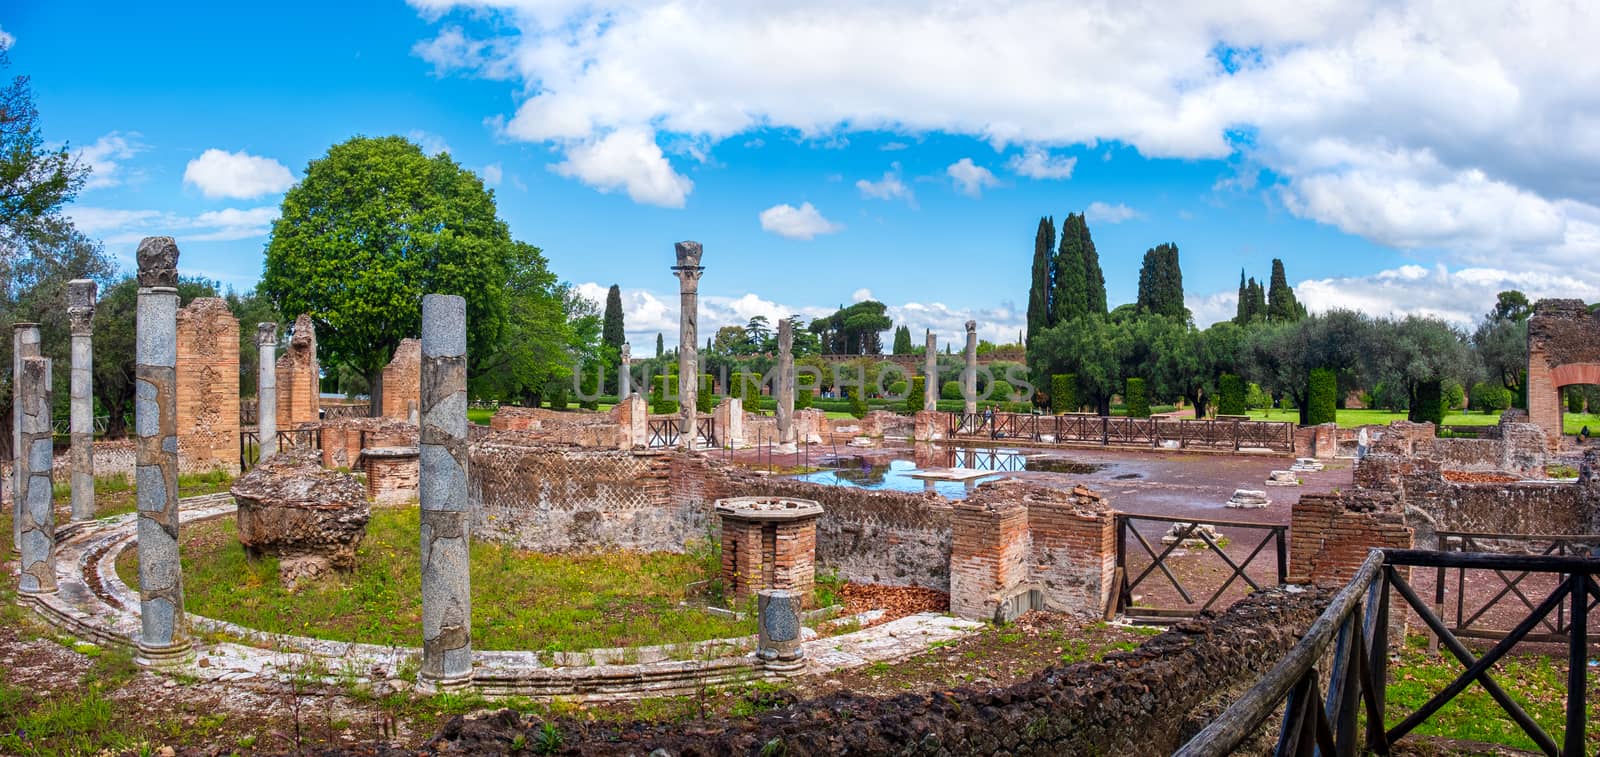 Tivoli - Villa Adriana or Hadrians Villa - Rome - Lazio landmark - Italy panoramic horizontal .